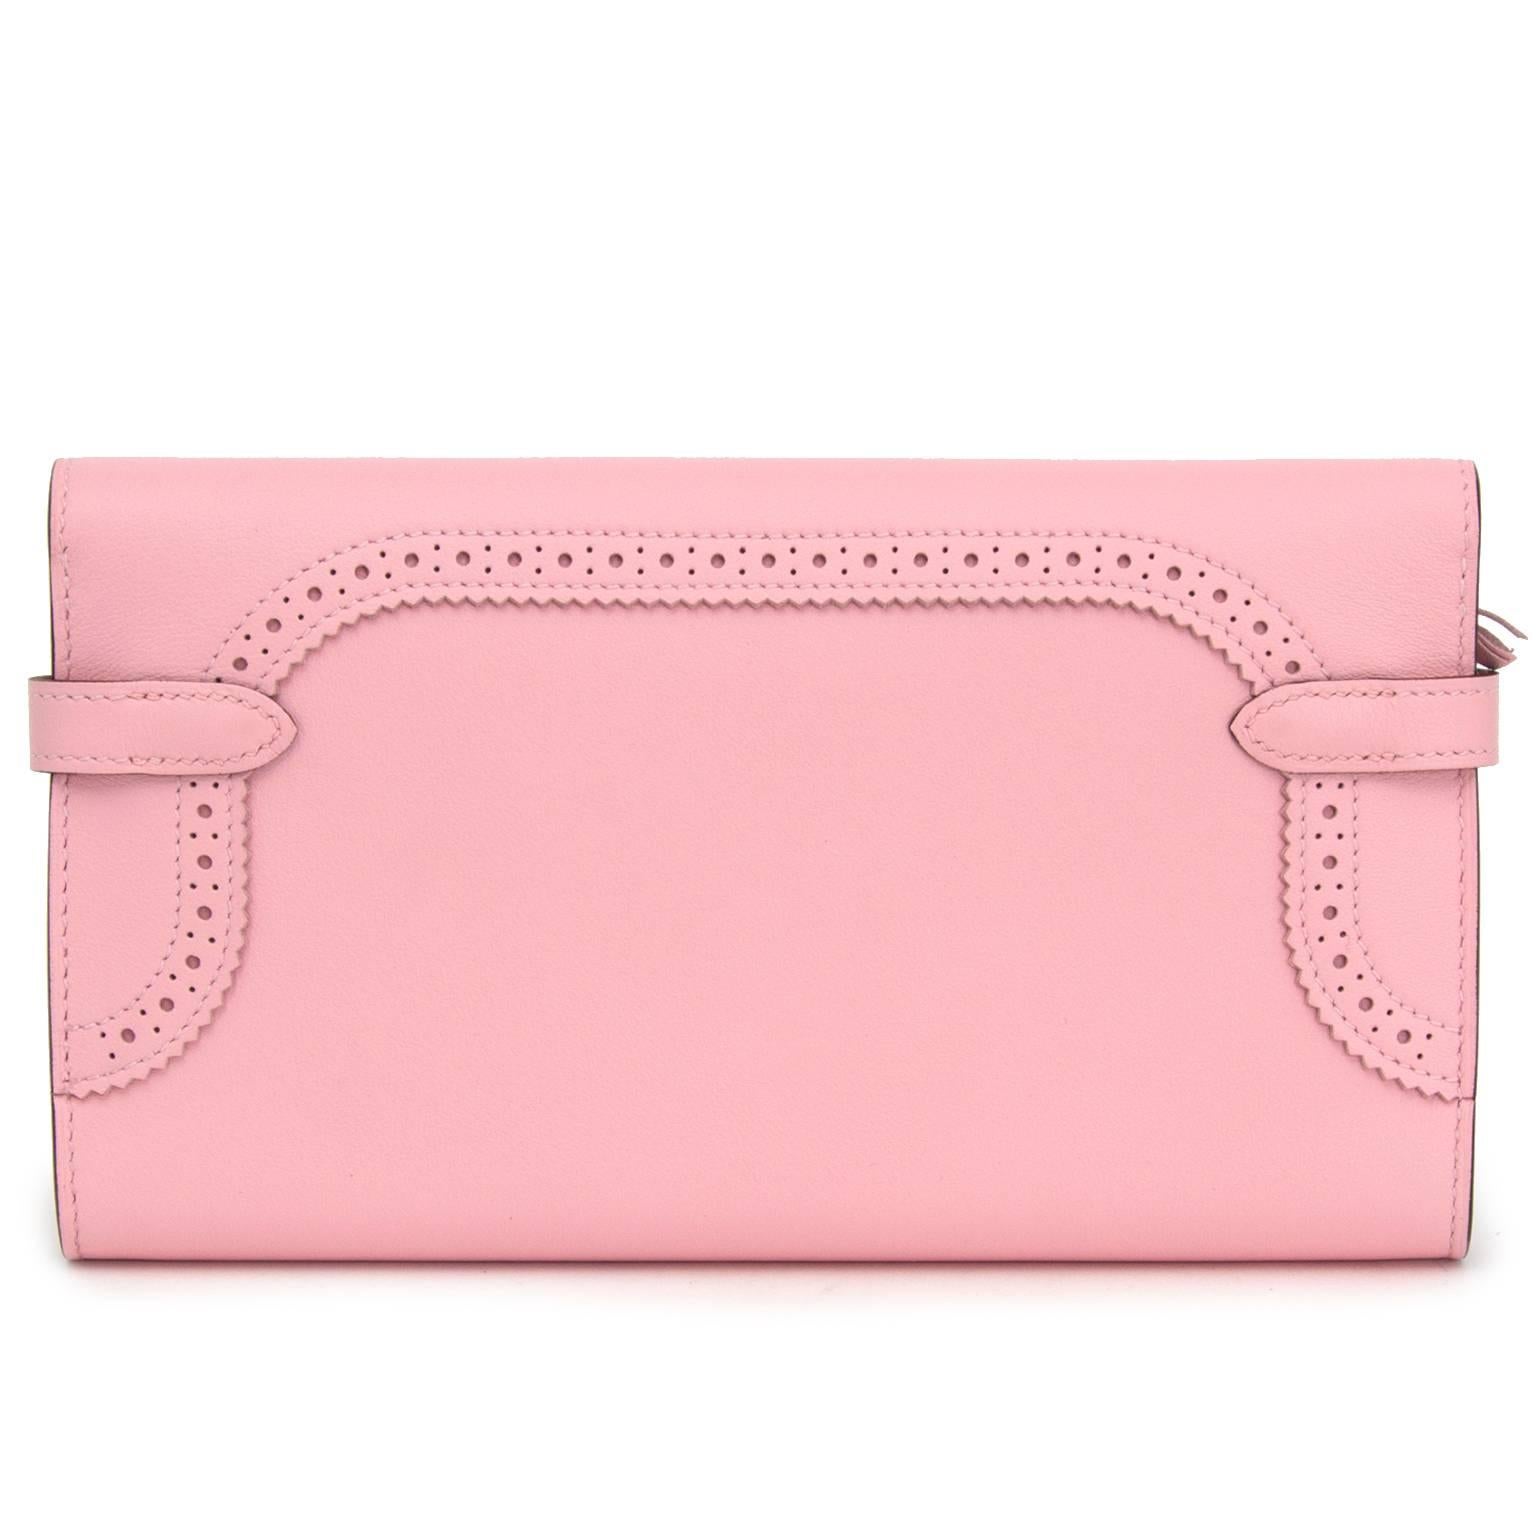 hermes kelly wallet pink